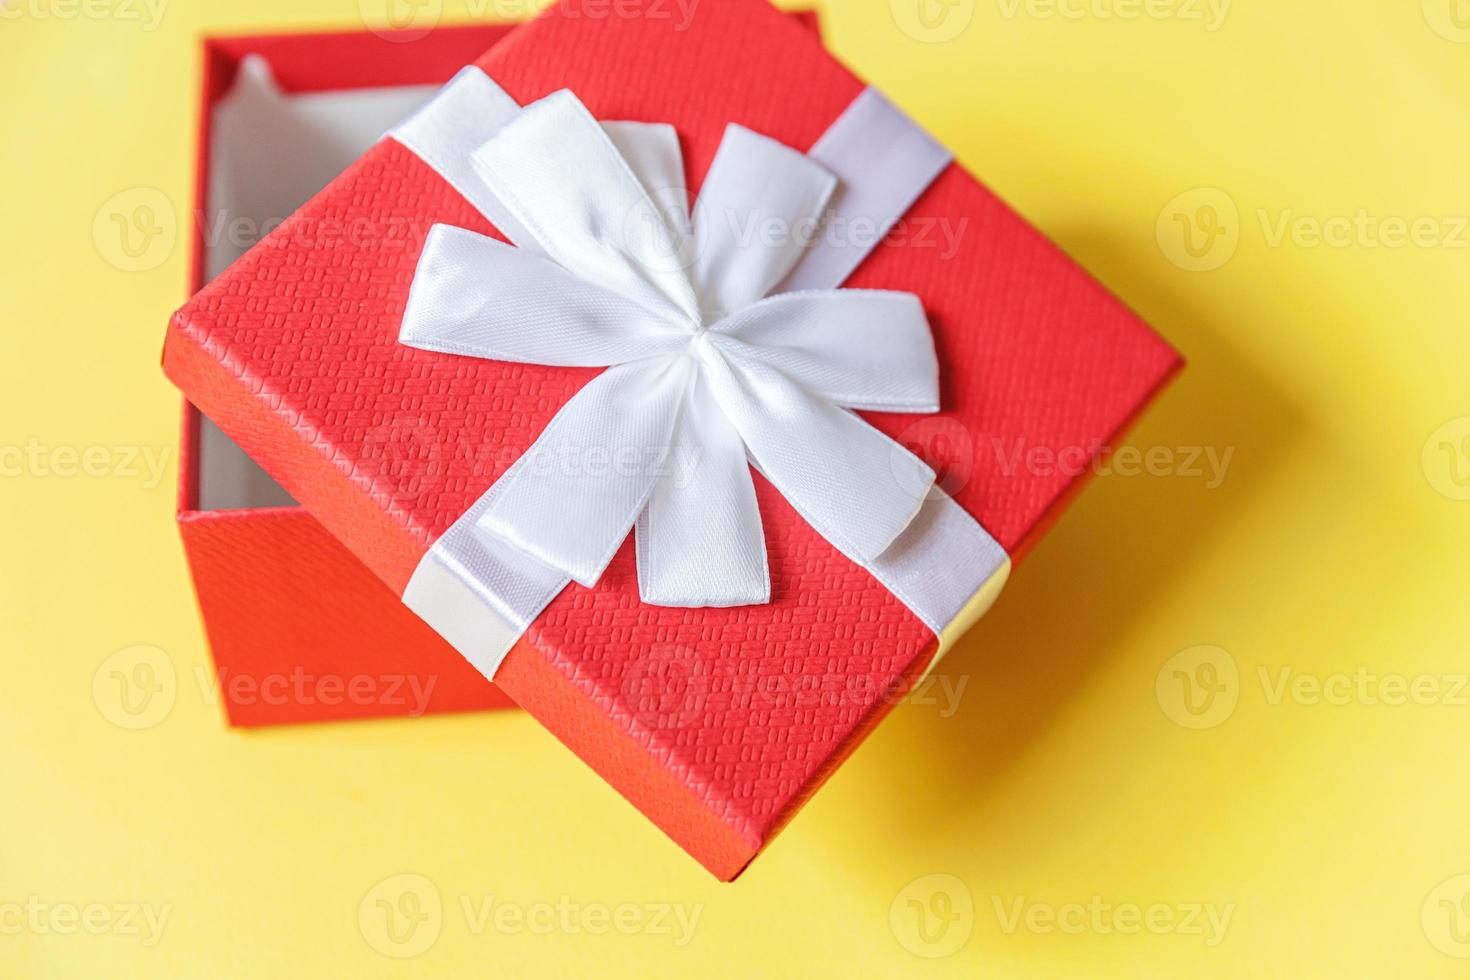 weihnachten neujahr geburtstag valentinstag feier vorhanden romantisches konzept. einfach minimalistisches Design rote Geschenkbox isoliert auf gelbem, farbigem Hintergrund. flach liegend draufsicht kopierraum. foto